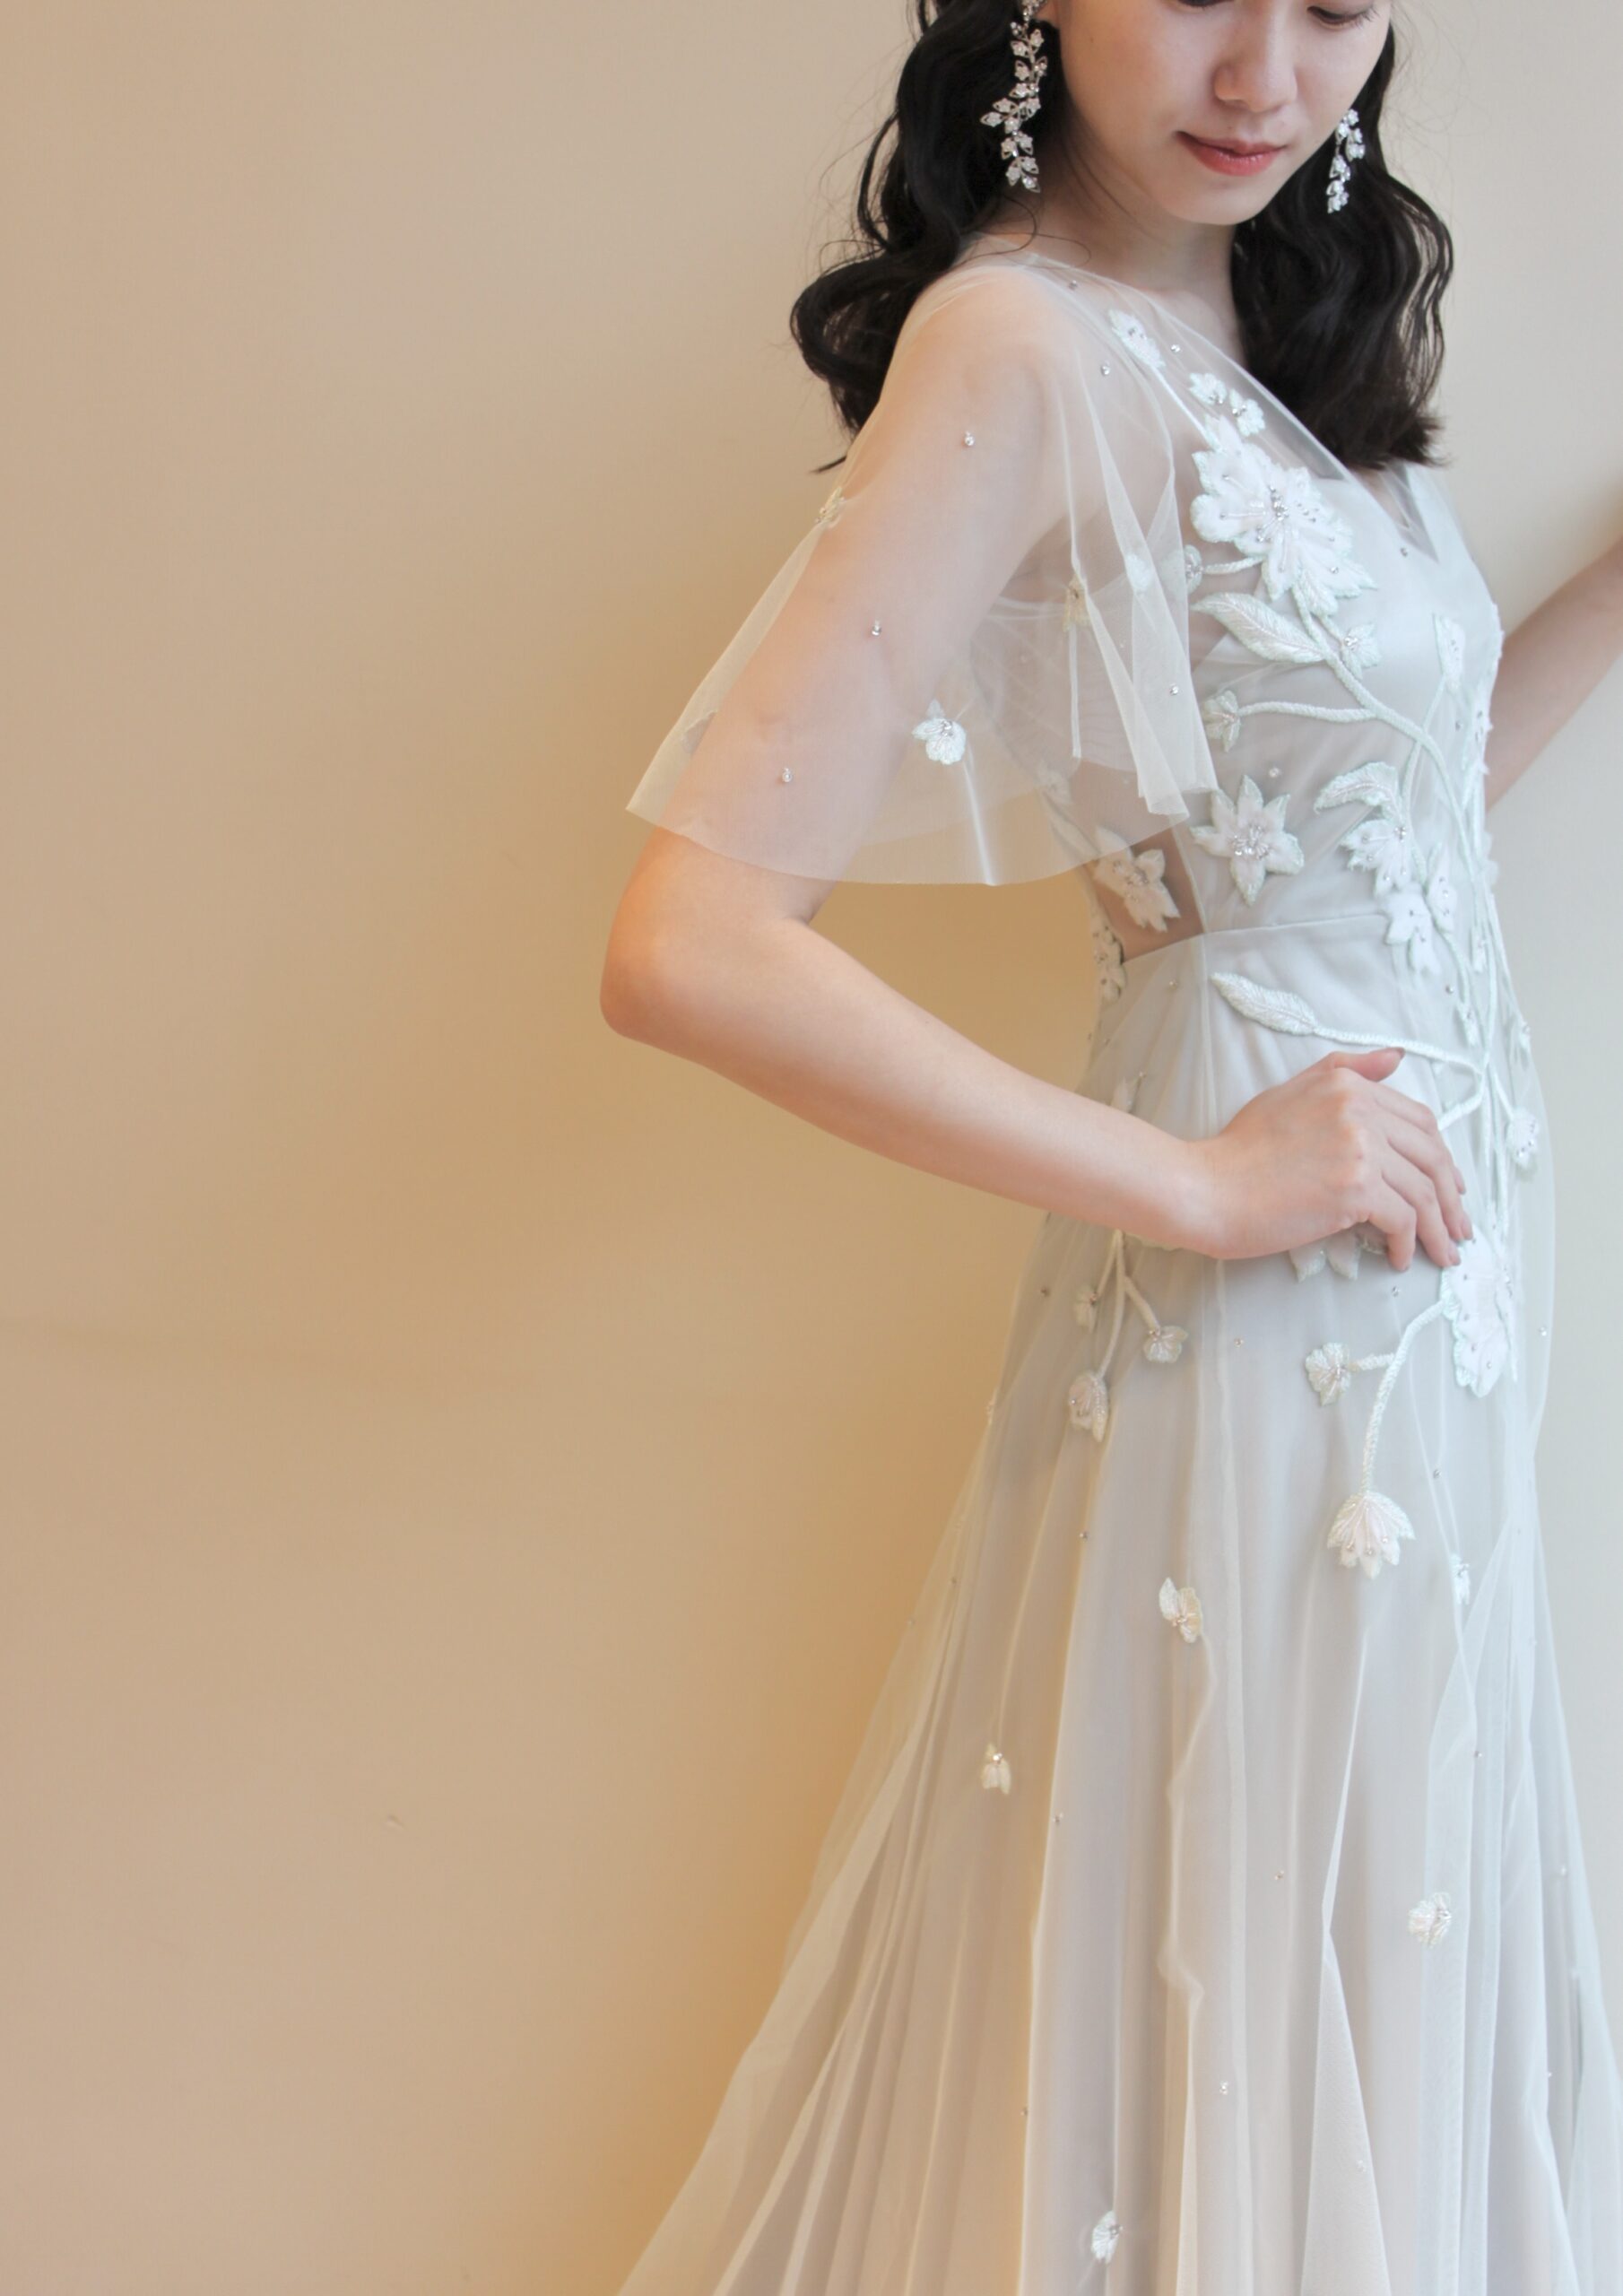 アレクサンドラグレッコのグレーのカラードレスは刺繍が可愛いので人と違うスタイルで愉しみたいプレ花嫁におすすめ